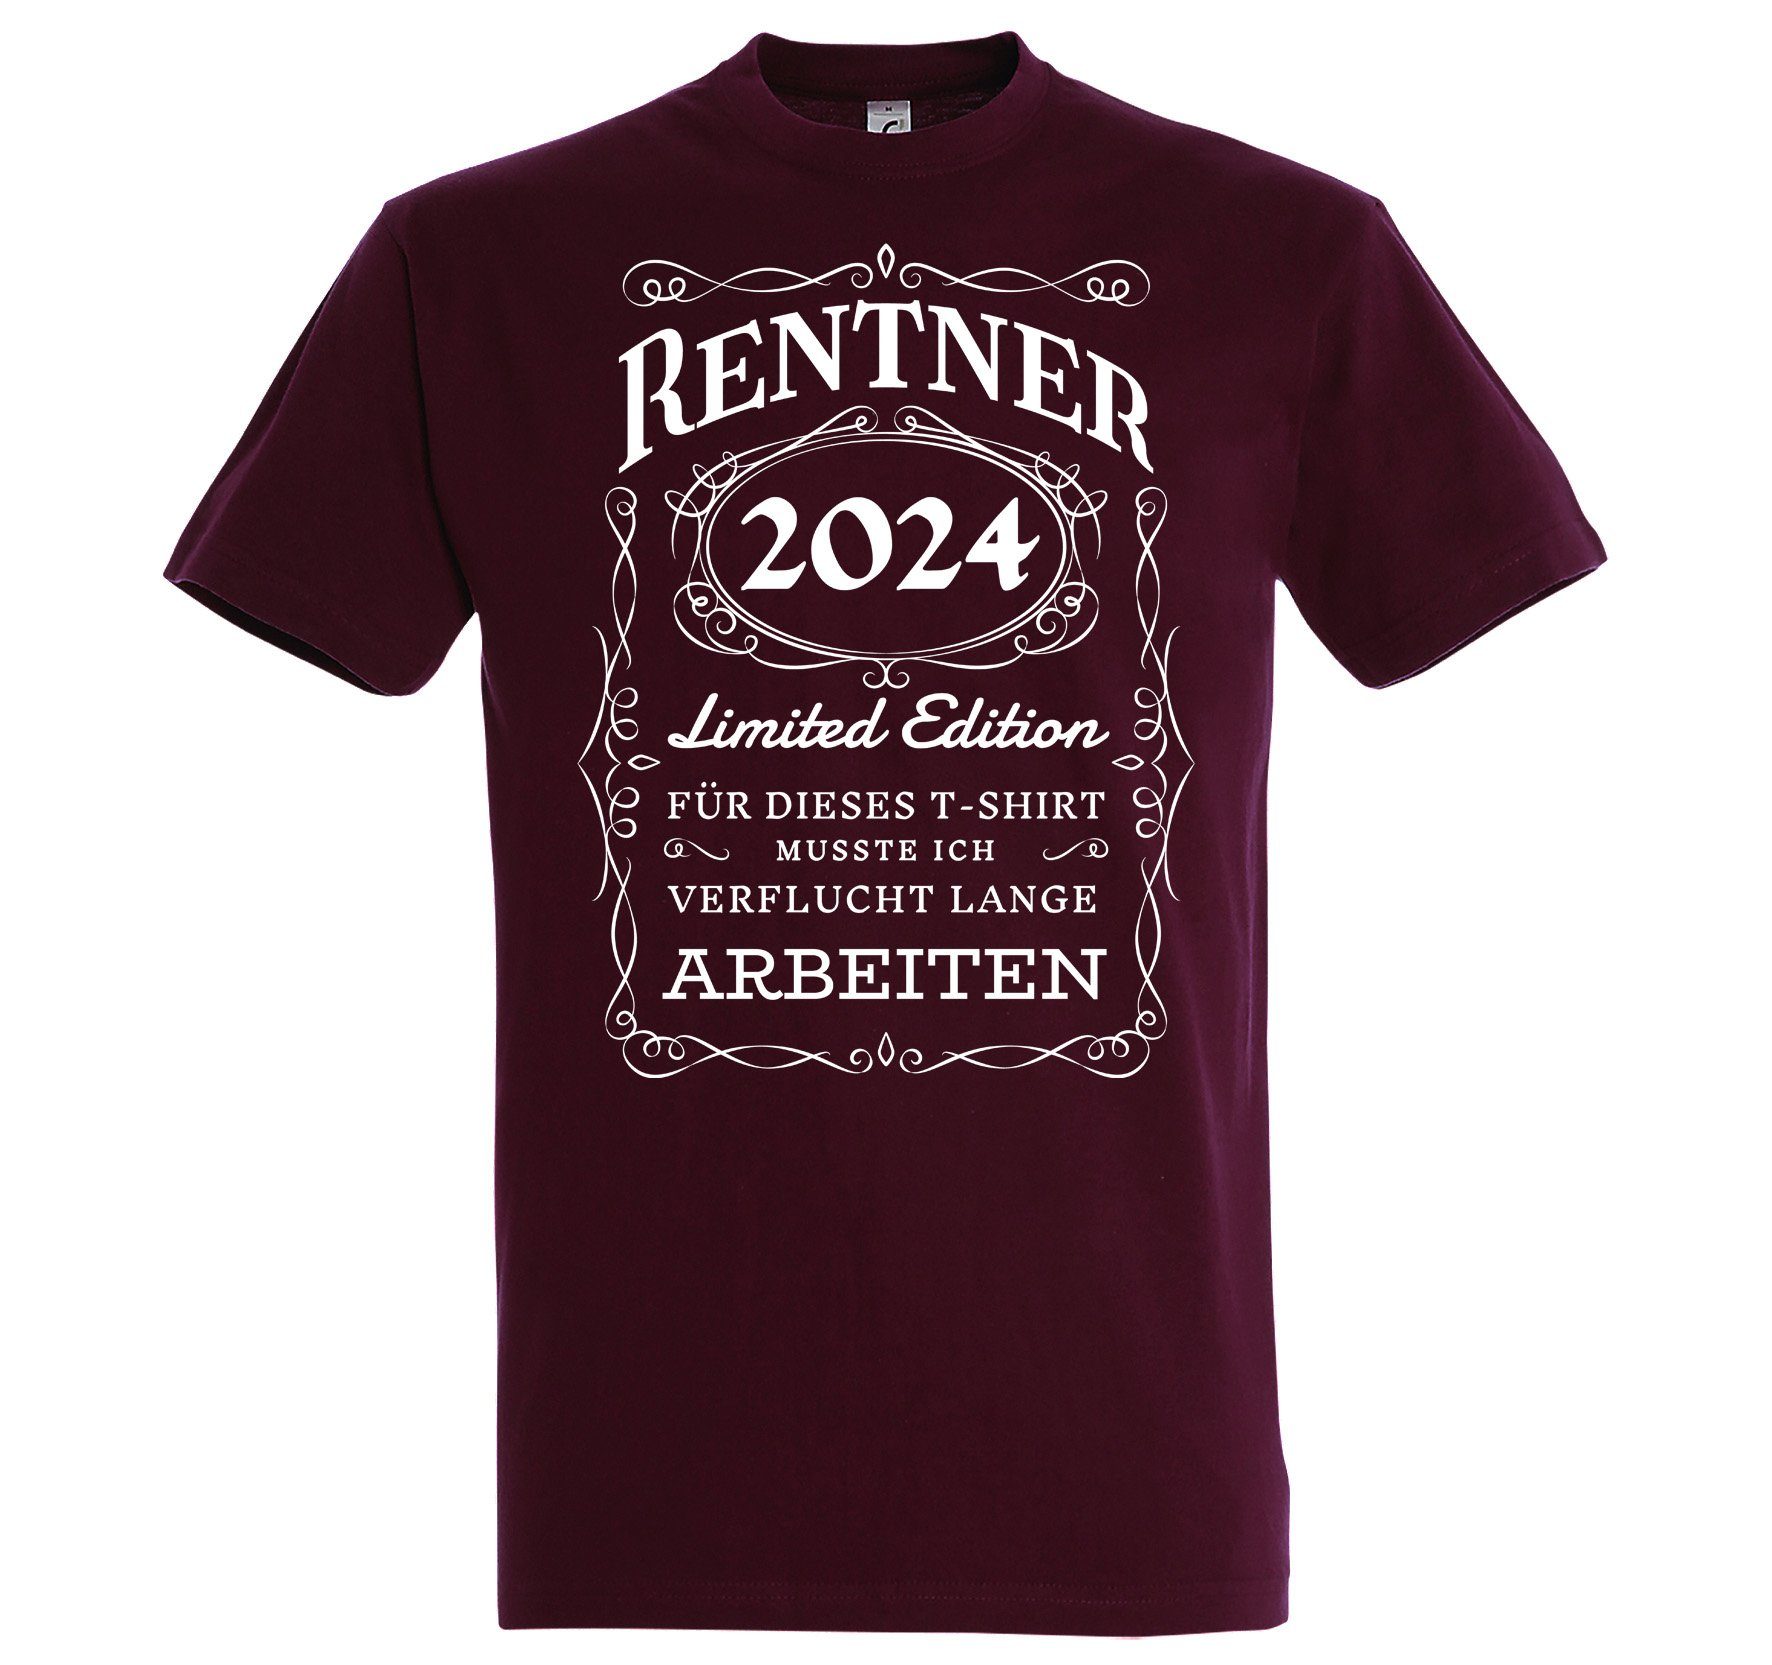 T-Shirt Geschenk zum lustigem Herren Designz Ruhestand Rente mit 2024 T-Shirt Youth Spruch RENTNER Burgund